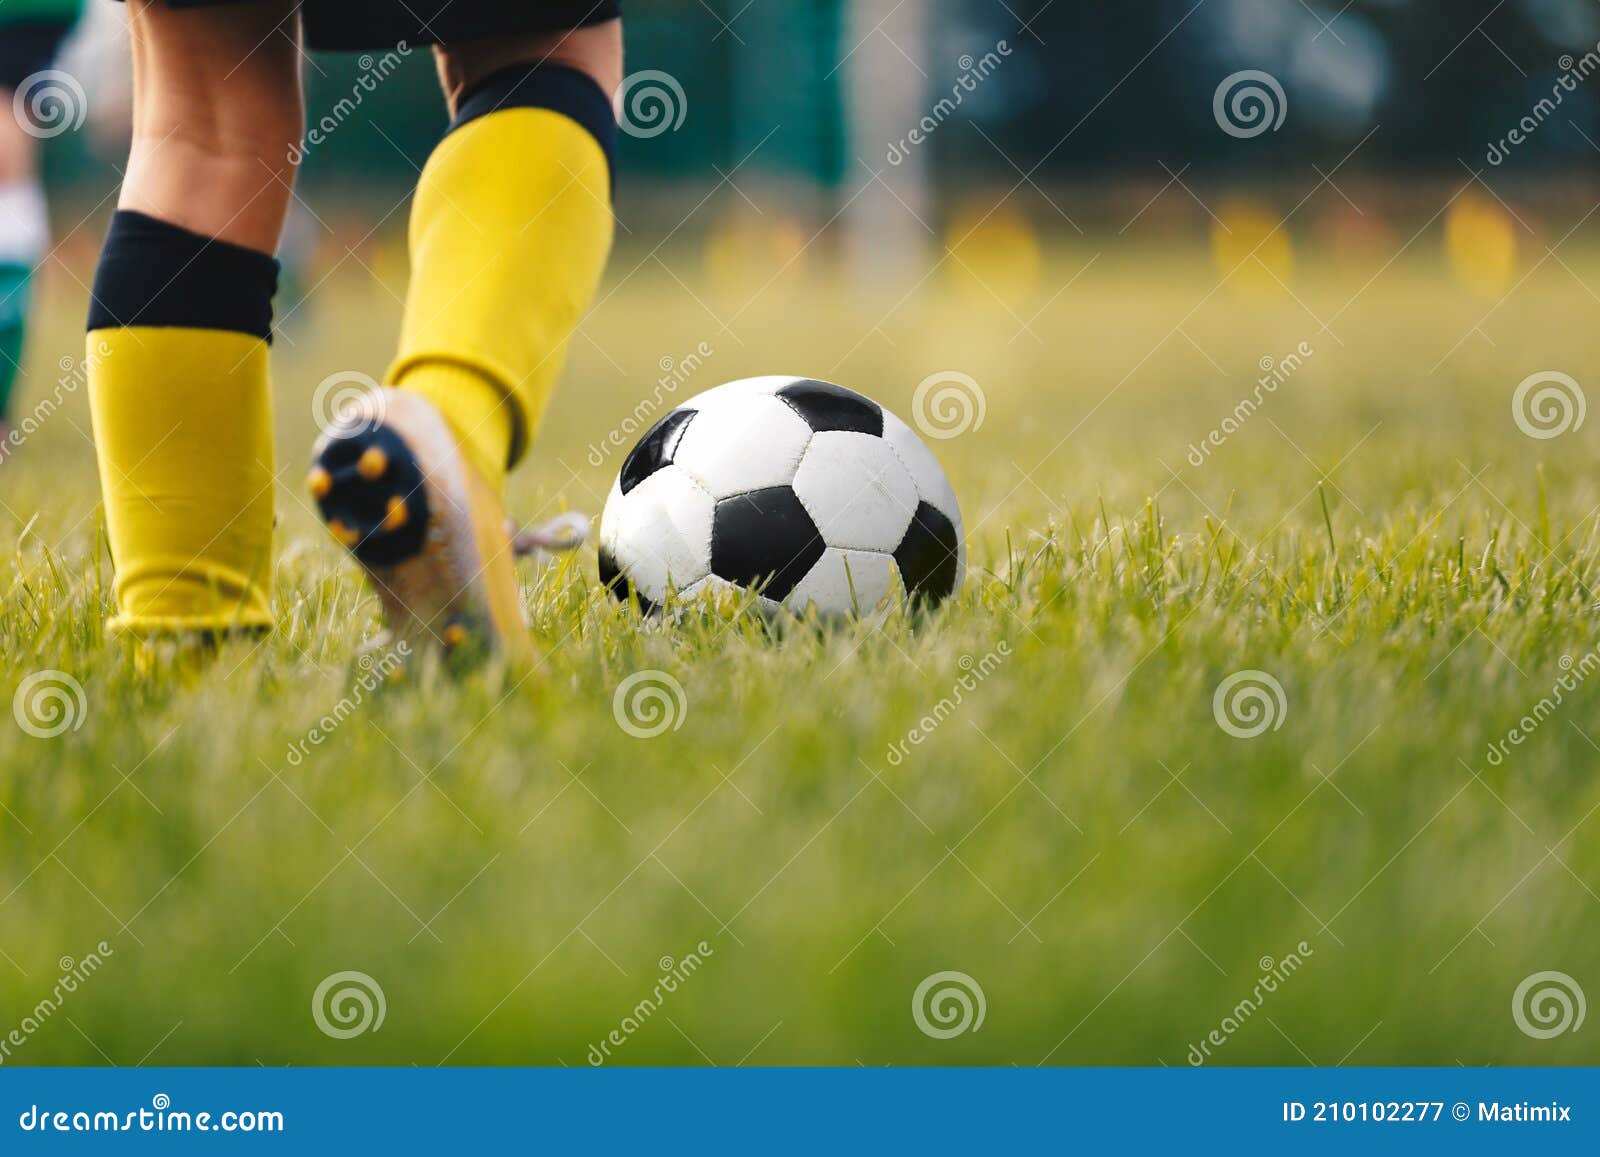 Contraste Entre Dois Jogadores De Futebol Tentando Chutar a Bola Imagem de  Stock - Imagem de grama, arena: 202289723